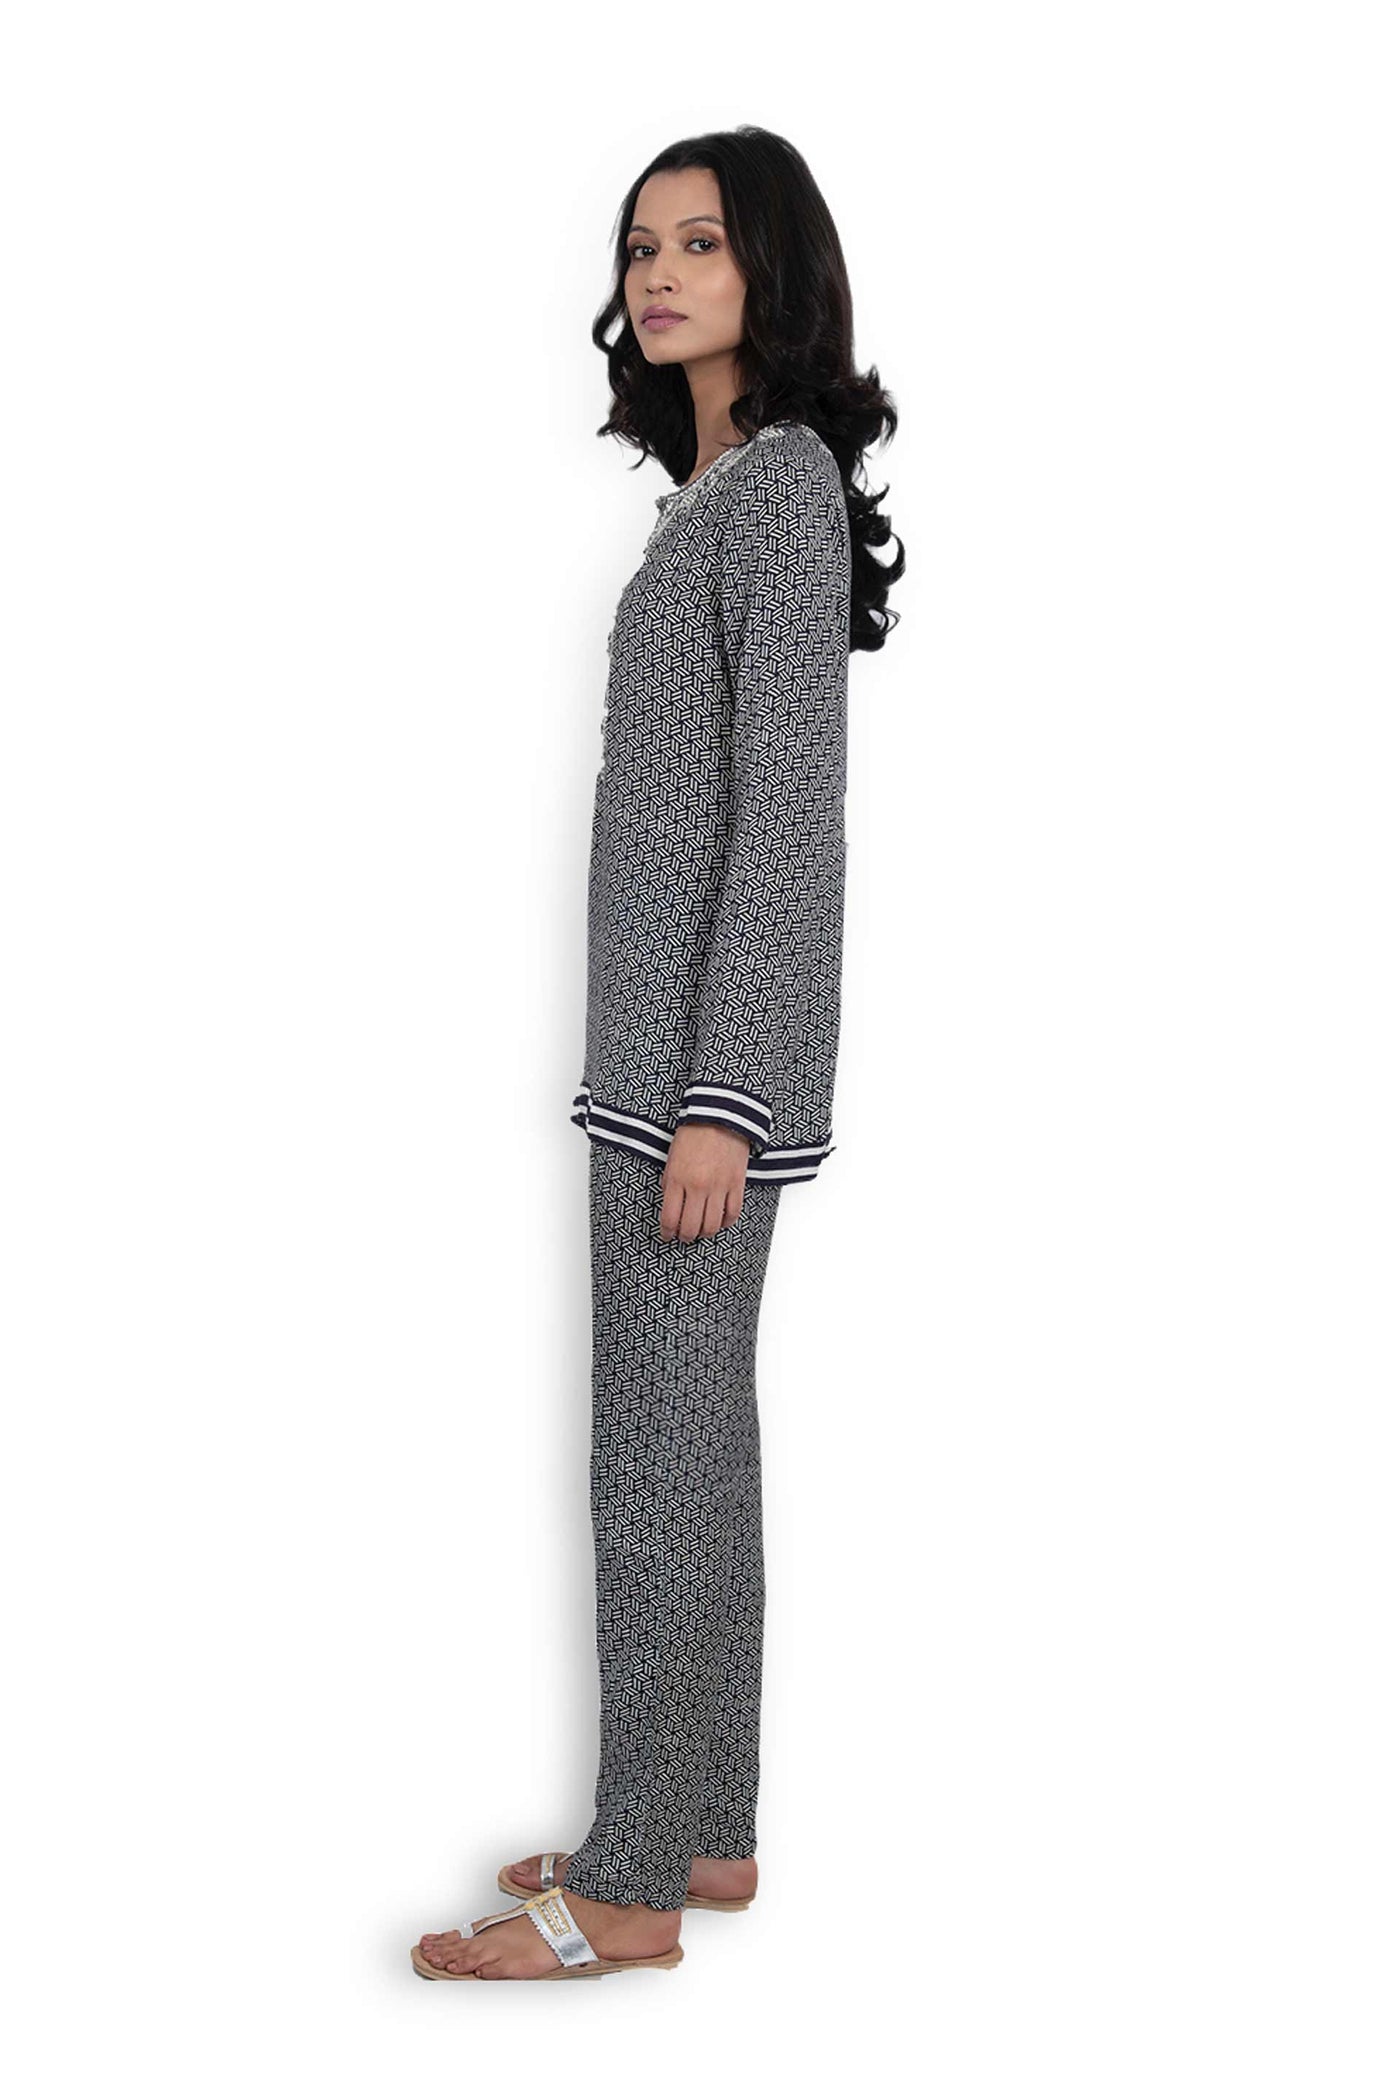 Monisha jaising Monochrome Set black white online shopping melange singapore indian designer wear